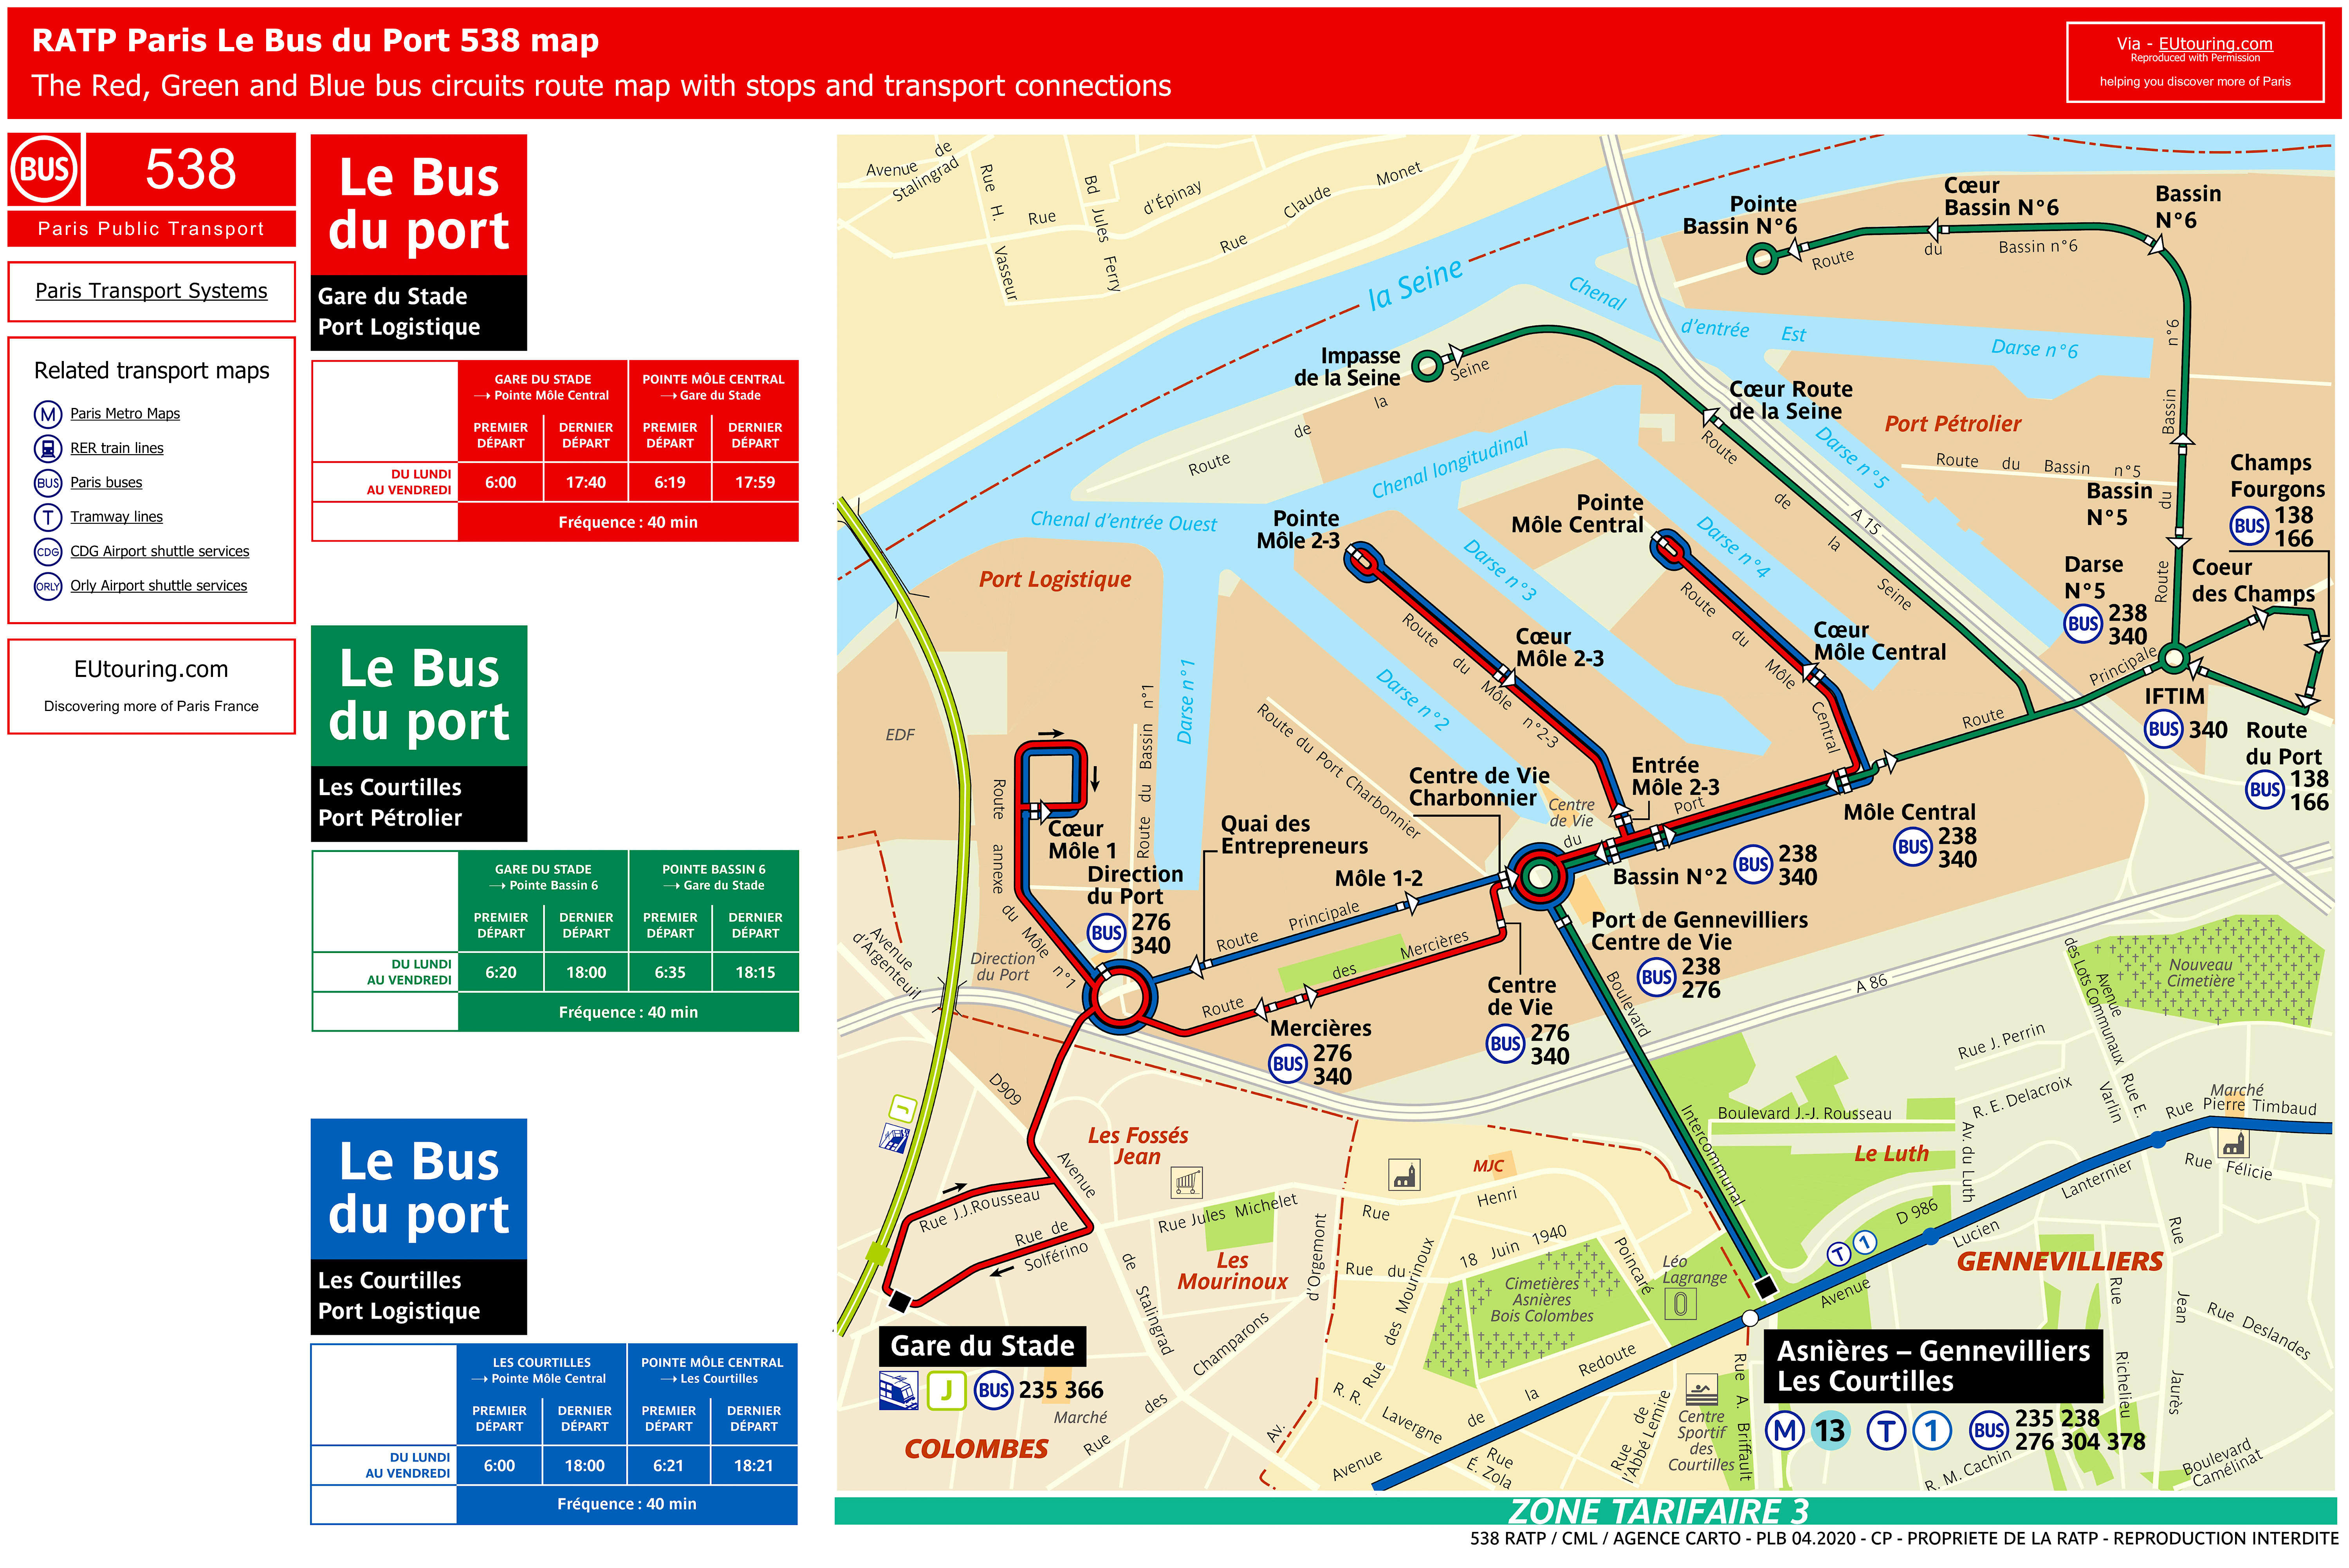 Paris bus 538 route maps available.